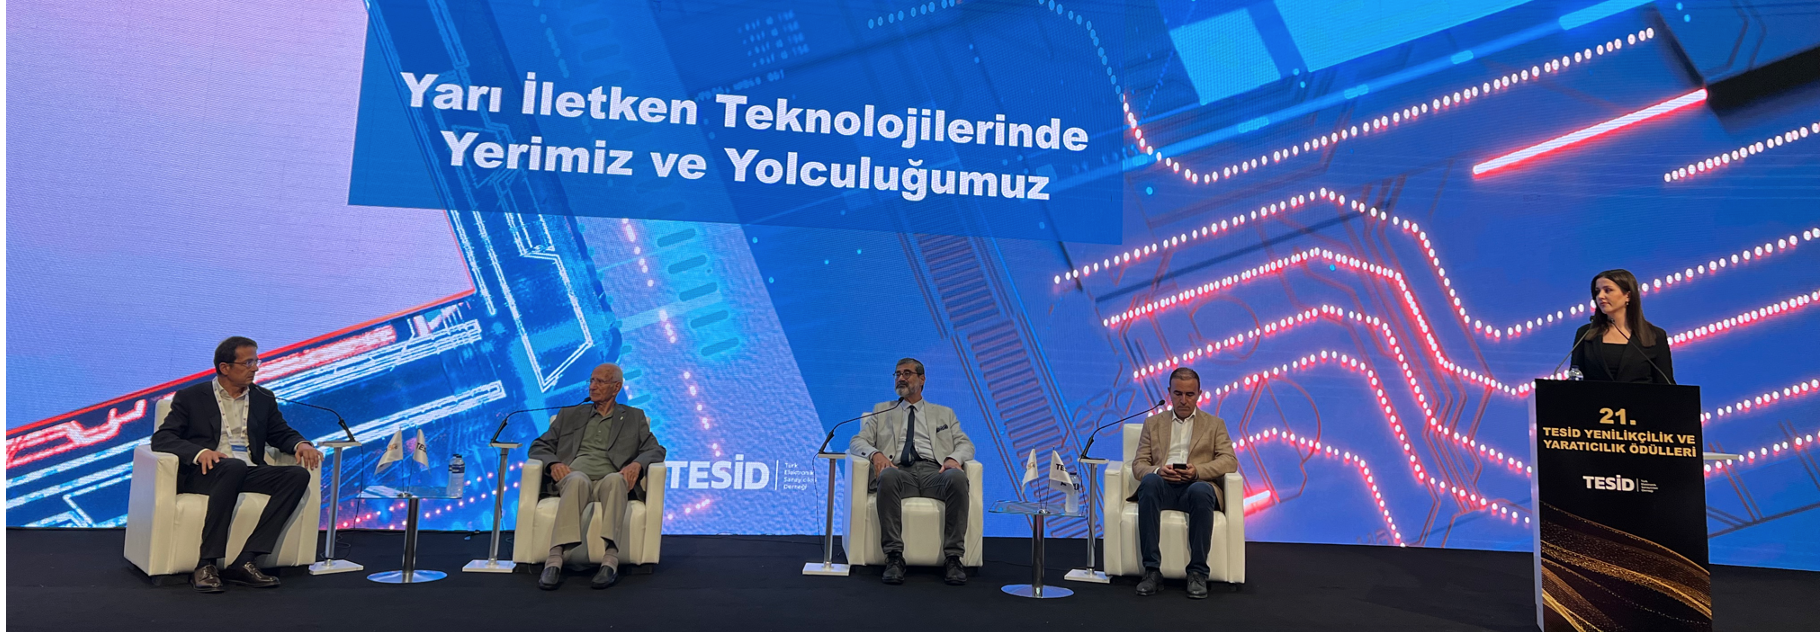 Türkiye’nin Yarı İletken Teknolojilerindeki Yeri ve Yolculuğu